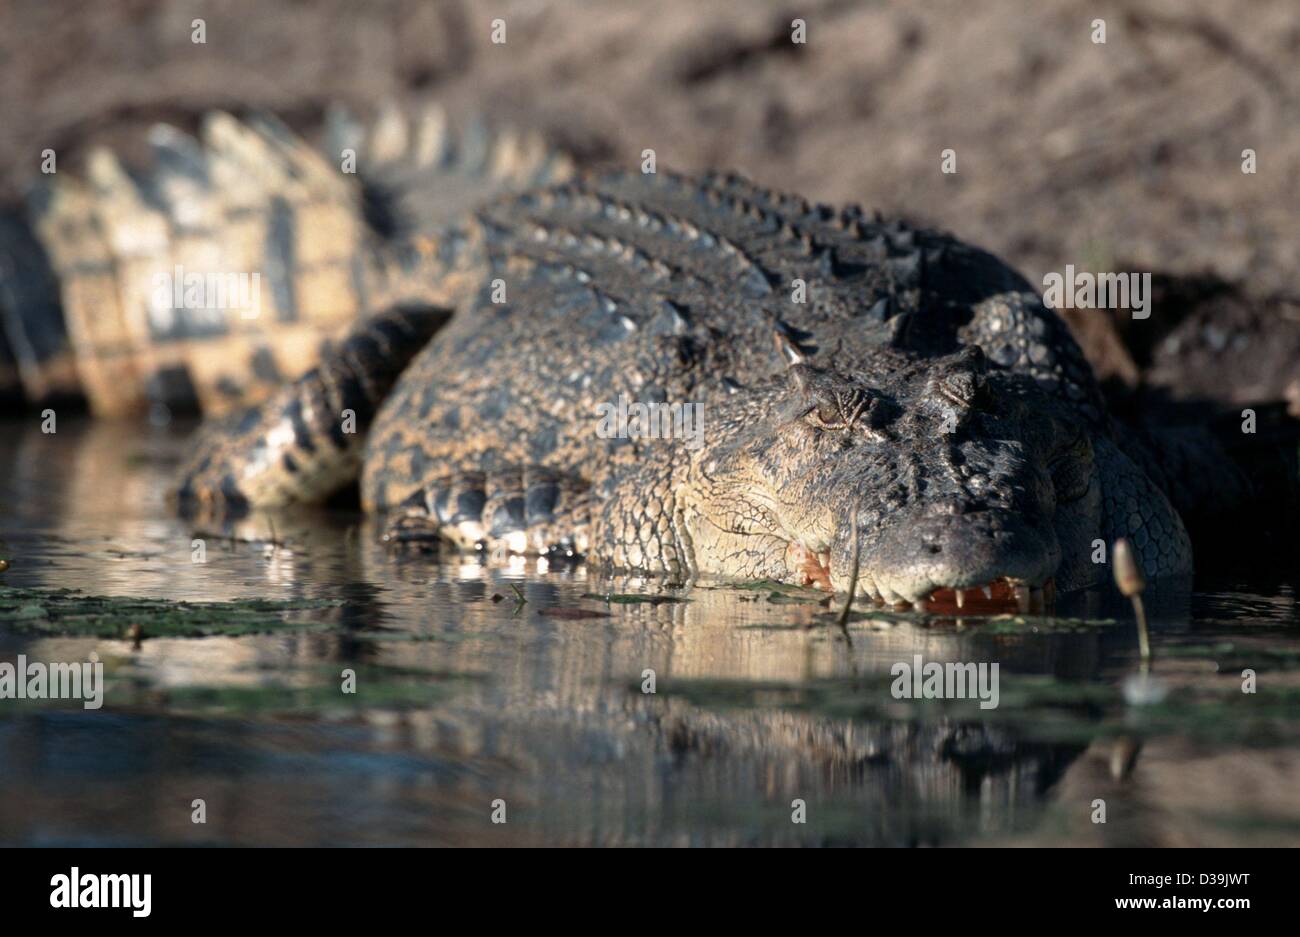 Los archivos de datos (DPA) - Un cocodrilo radica en el agua en el Parque Nacional de Kakadu en Australia (foto sin fecha). El 23 de diciembre de 2003 se informó de que un joven de 22 años fue asesinado por un cocodrilo en un río en el Territorio del Norte de Australia que 'habla' a sus dos amigos que se sentó arriba de un árbol Foto de stock